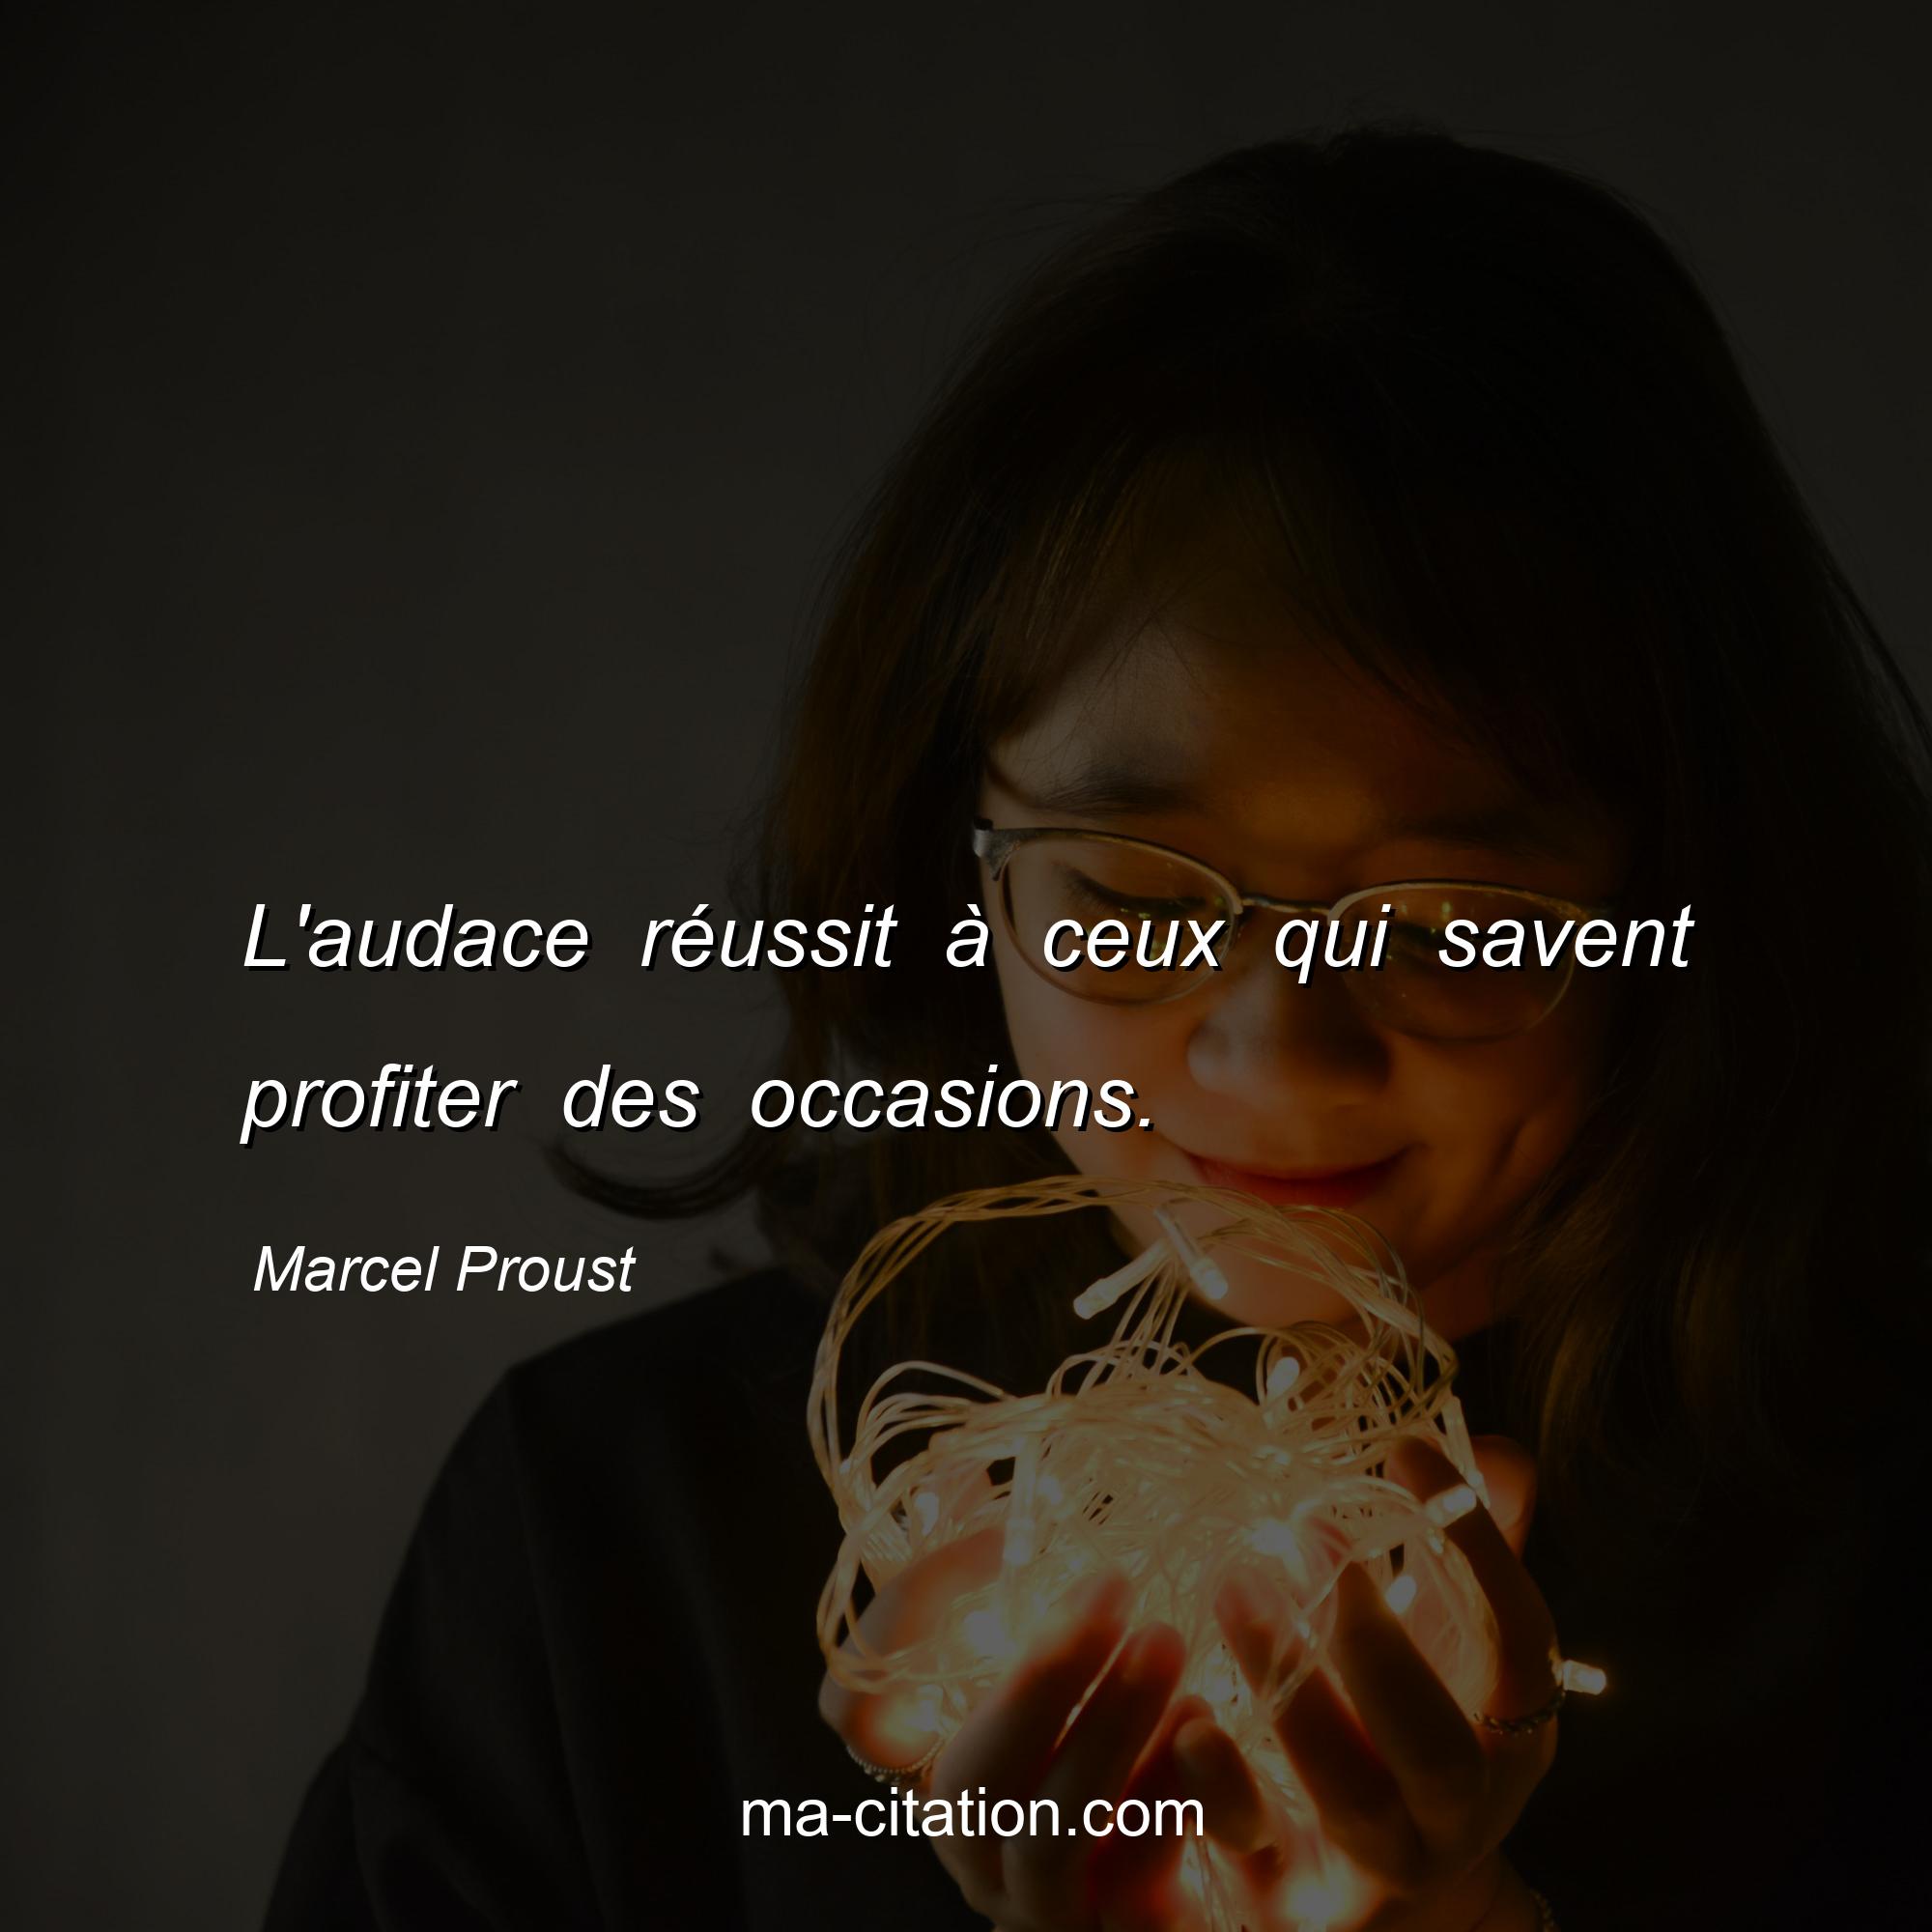 Marcel Proust : L'audace réussit à ceux qui savent profiter des occasions.